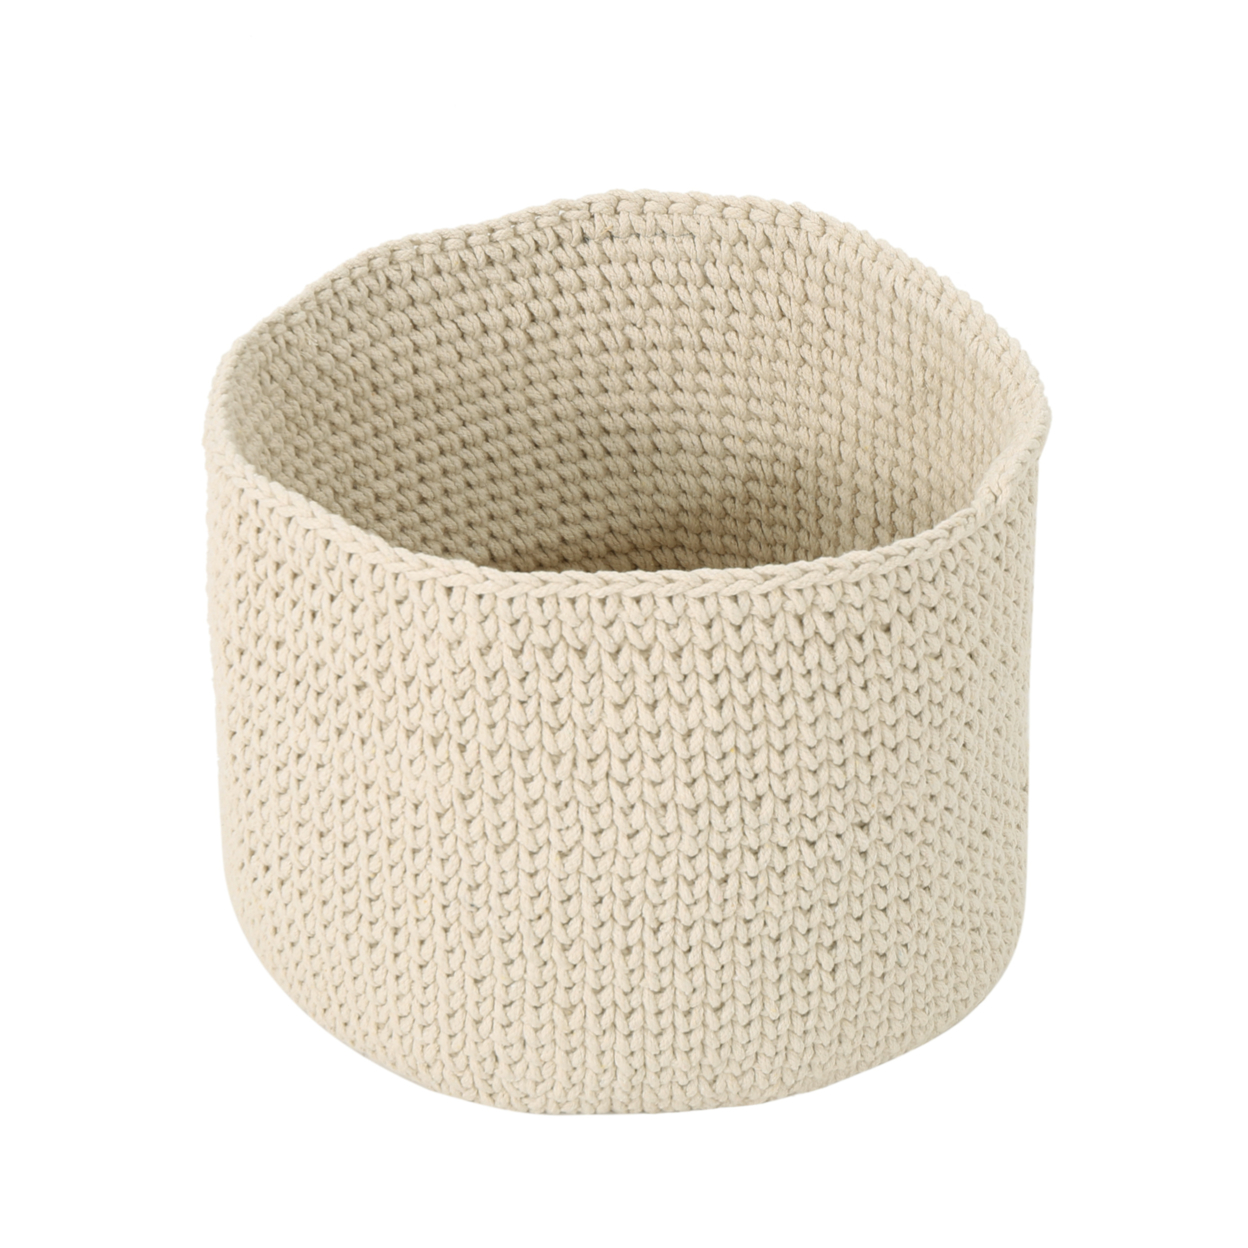 Moore Knitten Cotton Sundries Basket - Light Gray